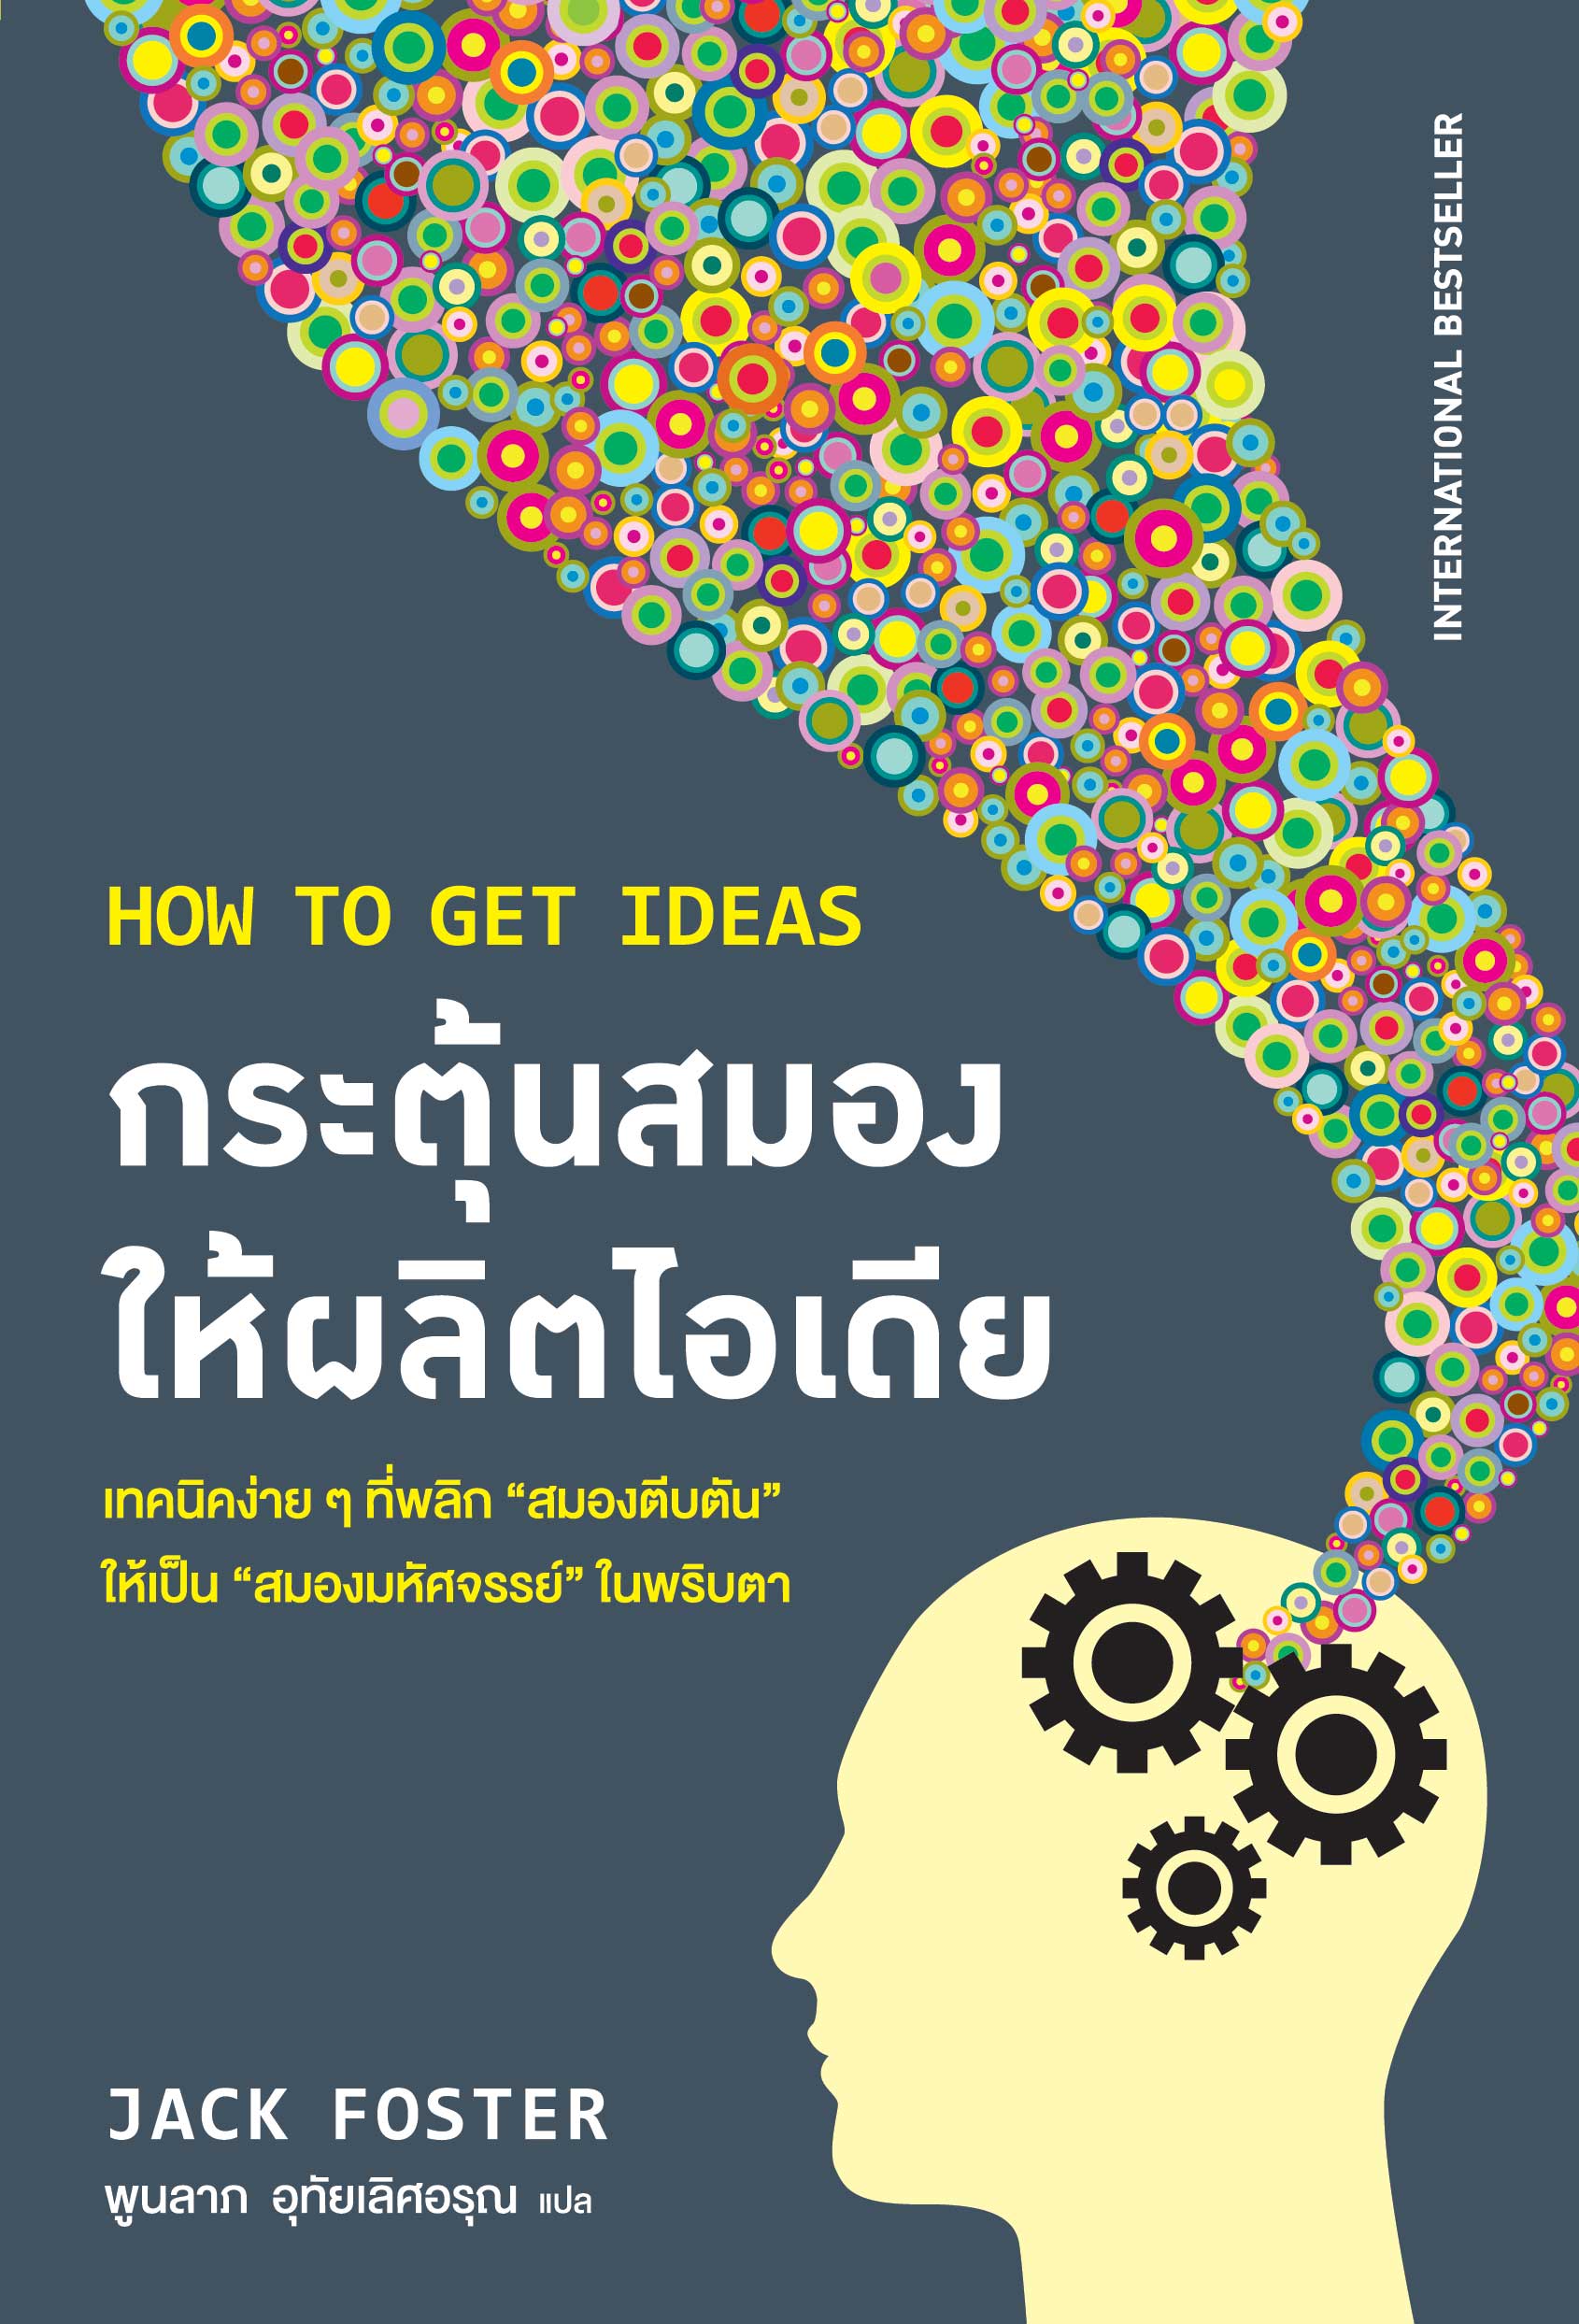 กระตุ้นสมองให้ผลิตไอเดีย (How to get ideas)